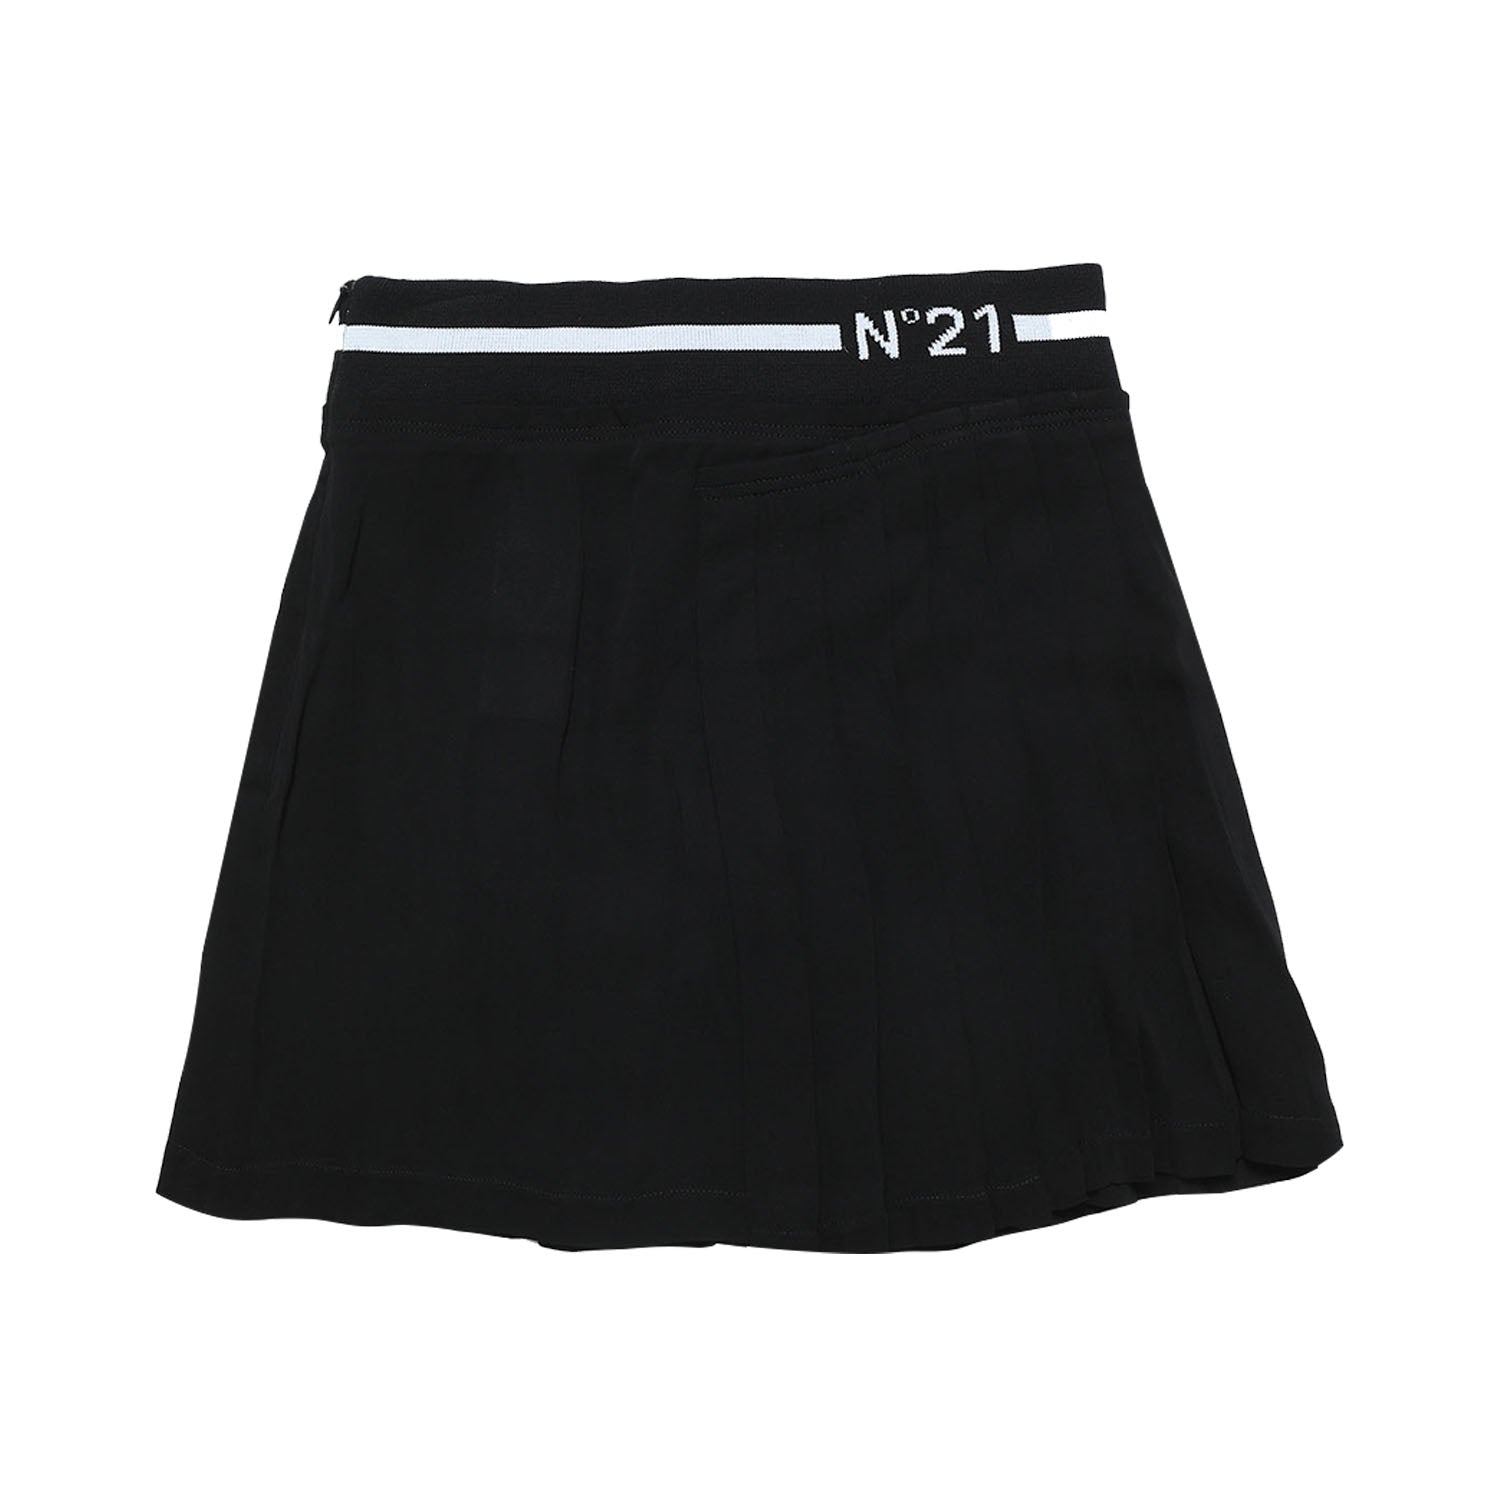 N21 Logo Skirt - Black